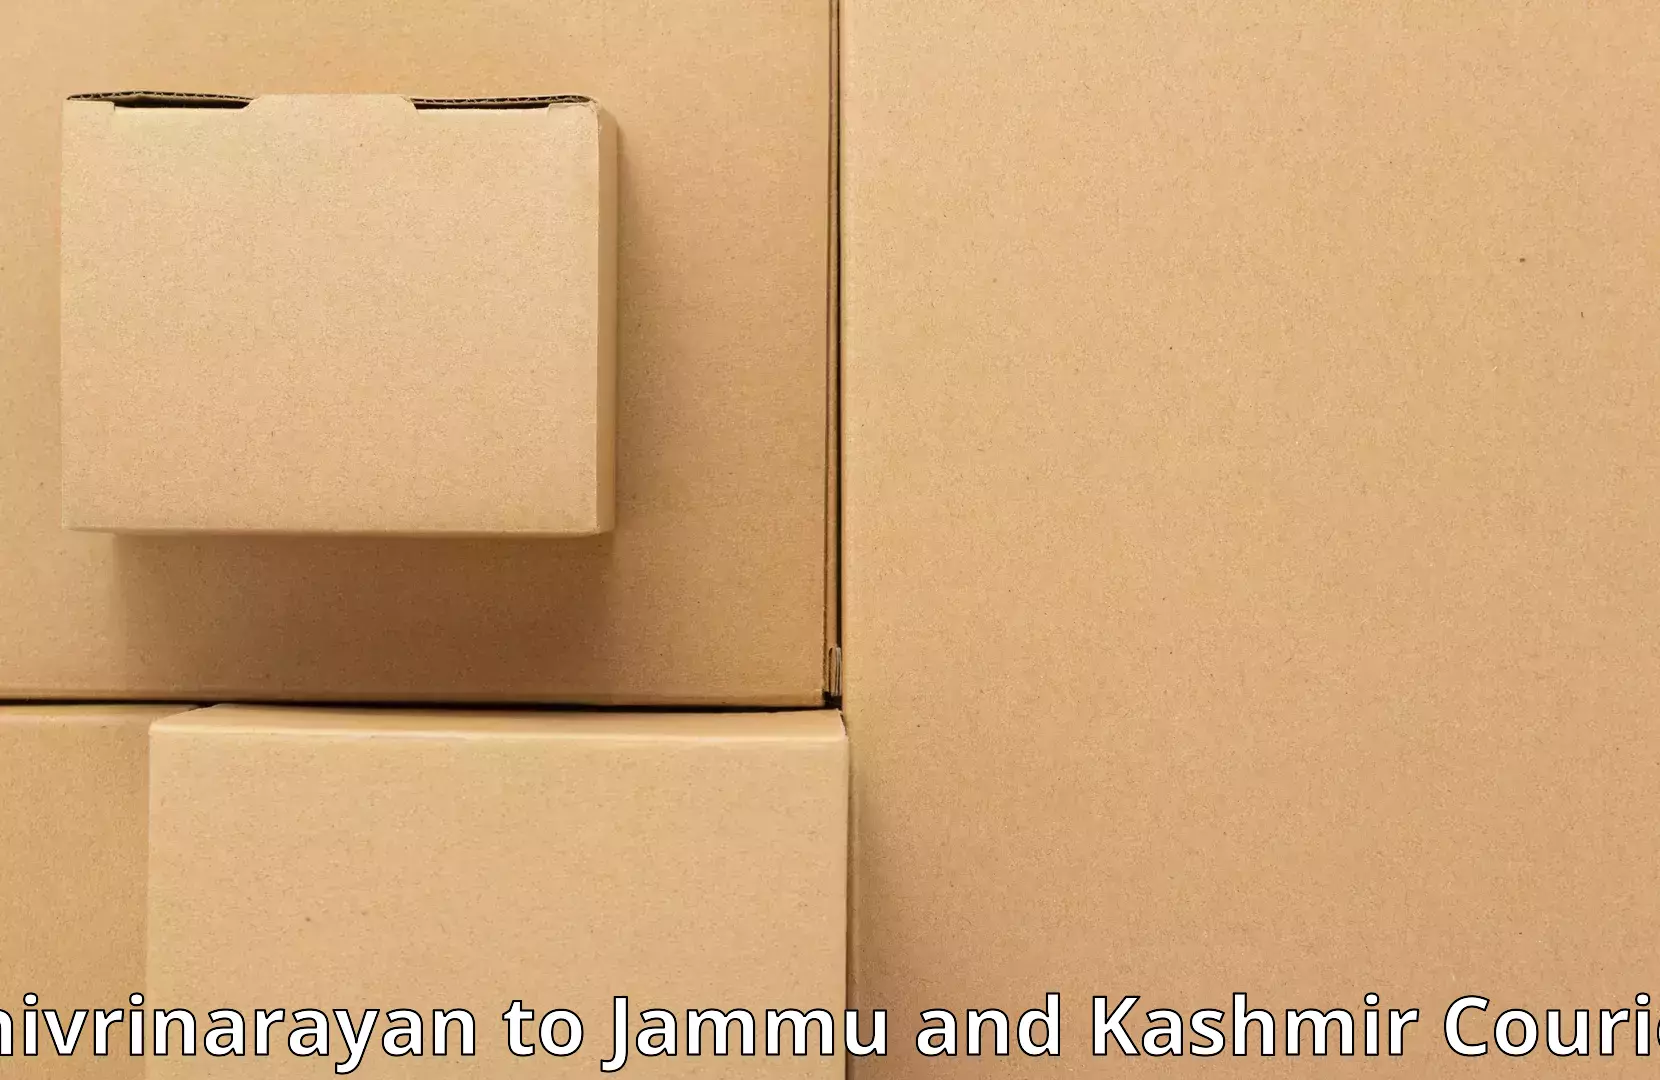 Stress-free moving Shivrinarayan to University of Jammu